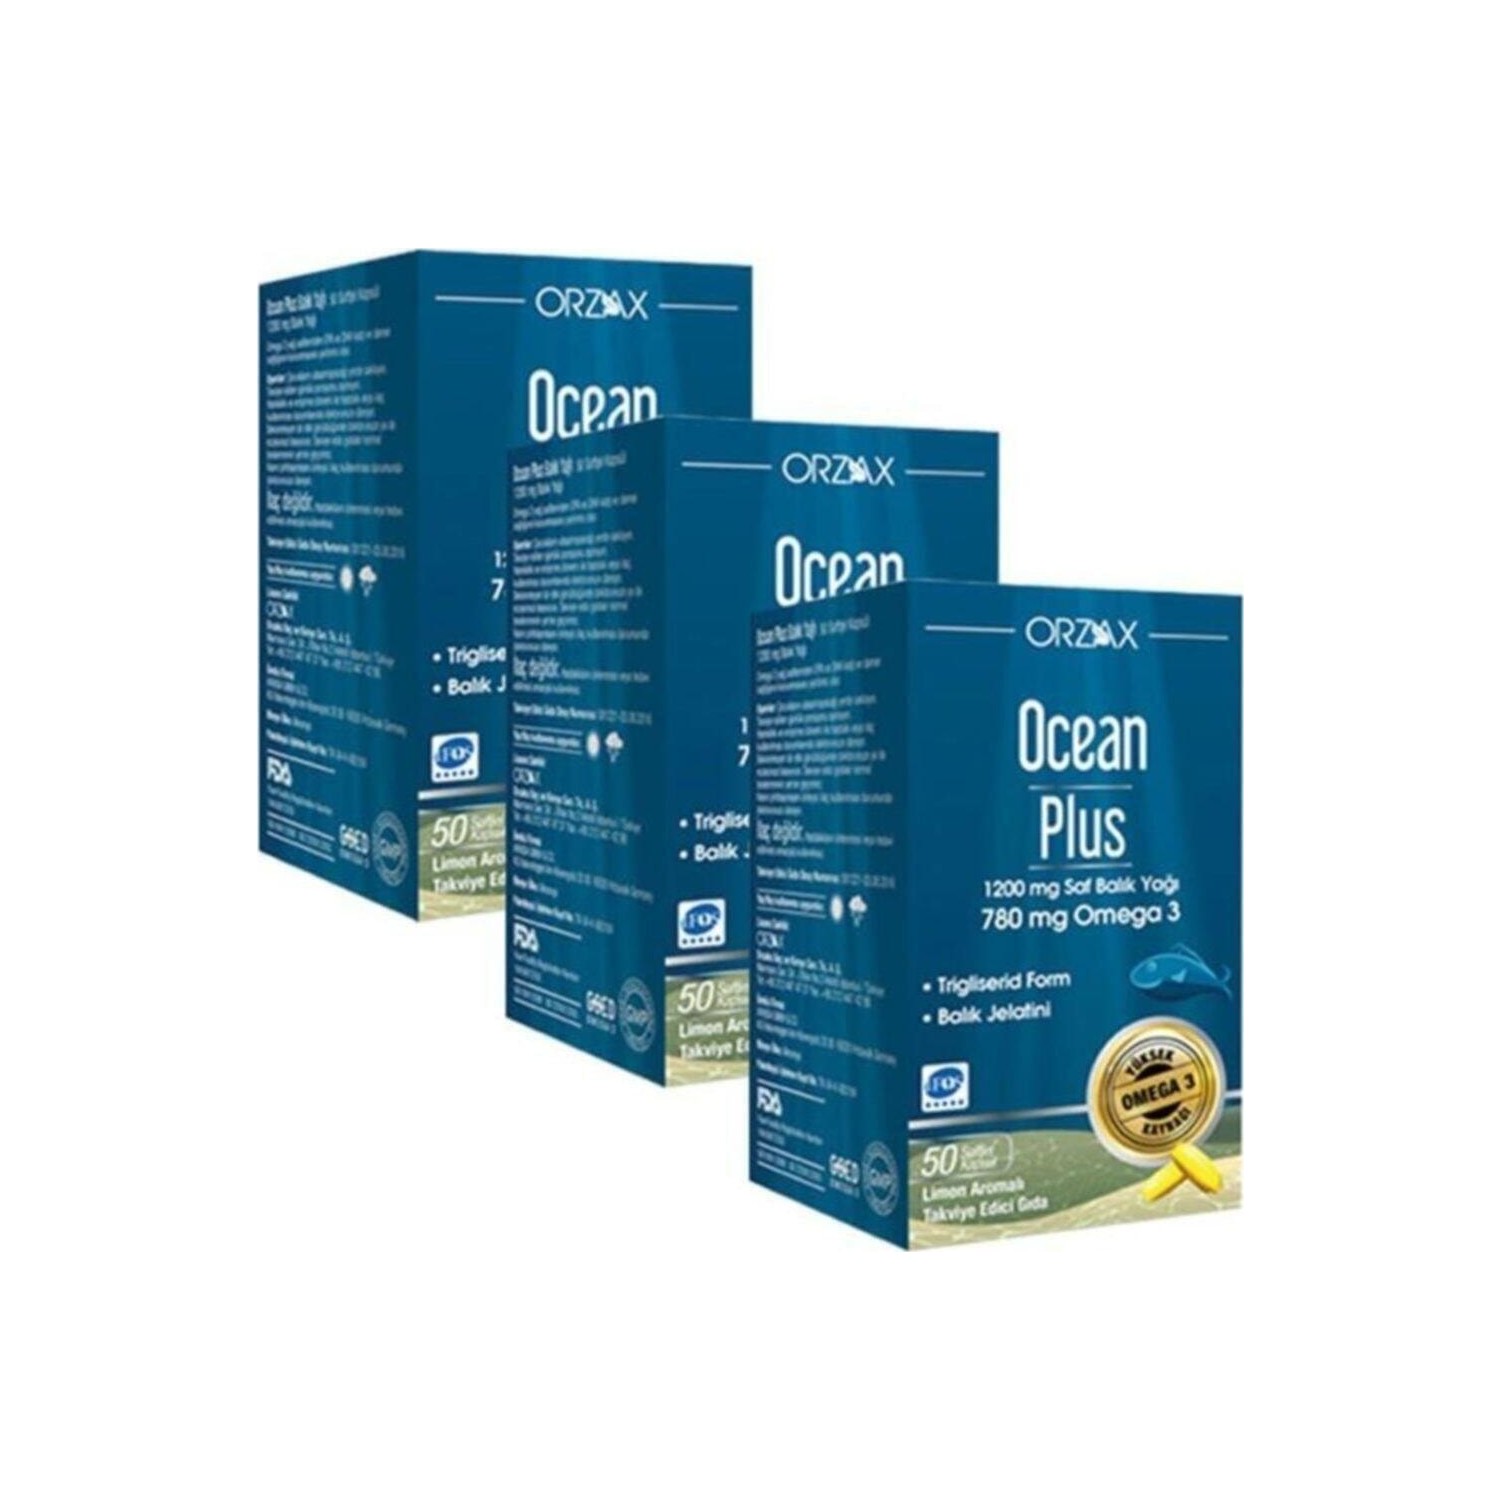 Омега-3 Plus Orzax 1200 мг, 3 упаковки по 50 капсул омега 3 plus orzax 1200 мг 2 упаковки по 50 капсул